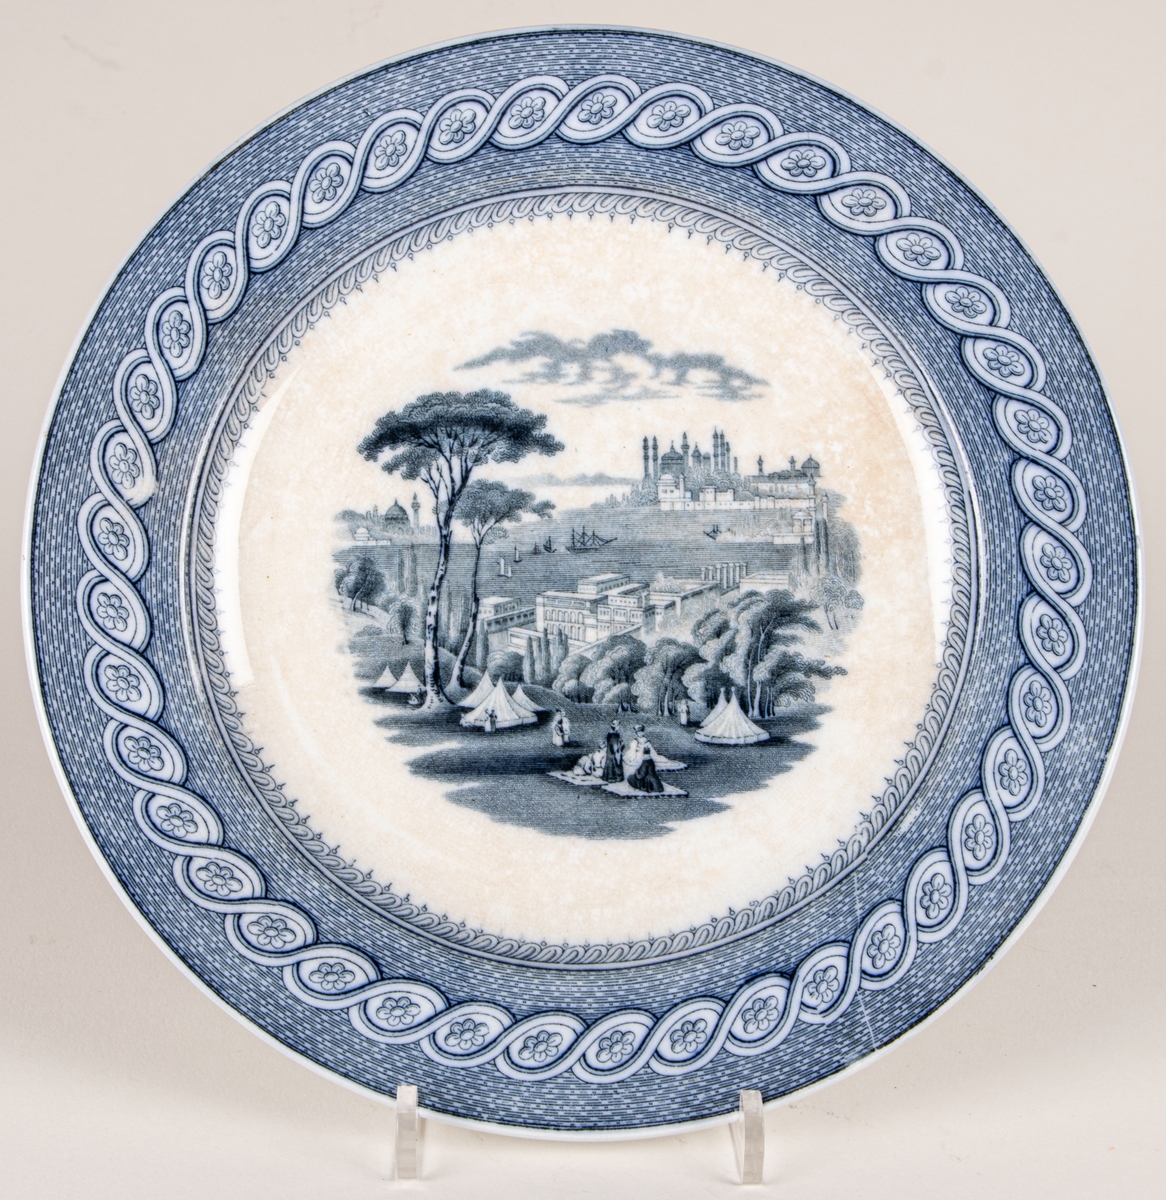 Tallrik, flat, fajans, blå dekor, stämplad med kartusch märkt: Byzantium JR & C.
John Ridgway & Co, Shelton, England 1841-1855.